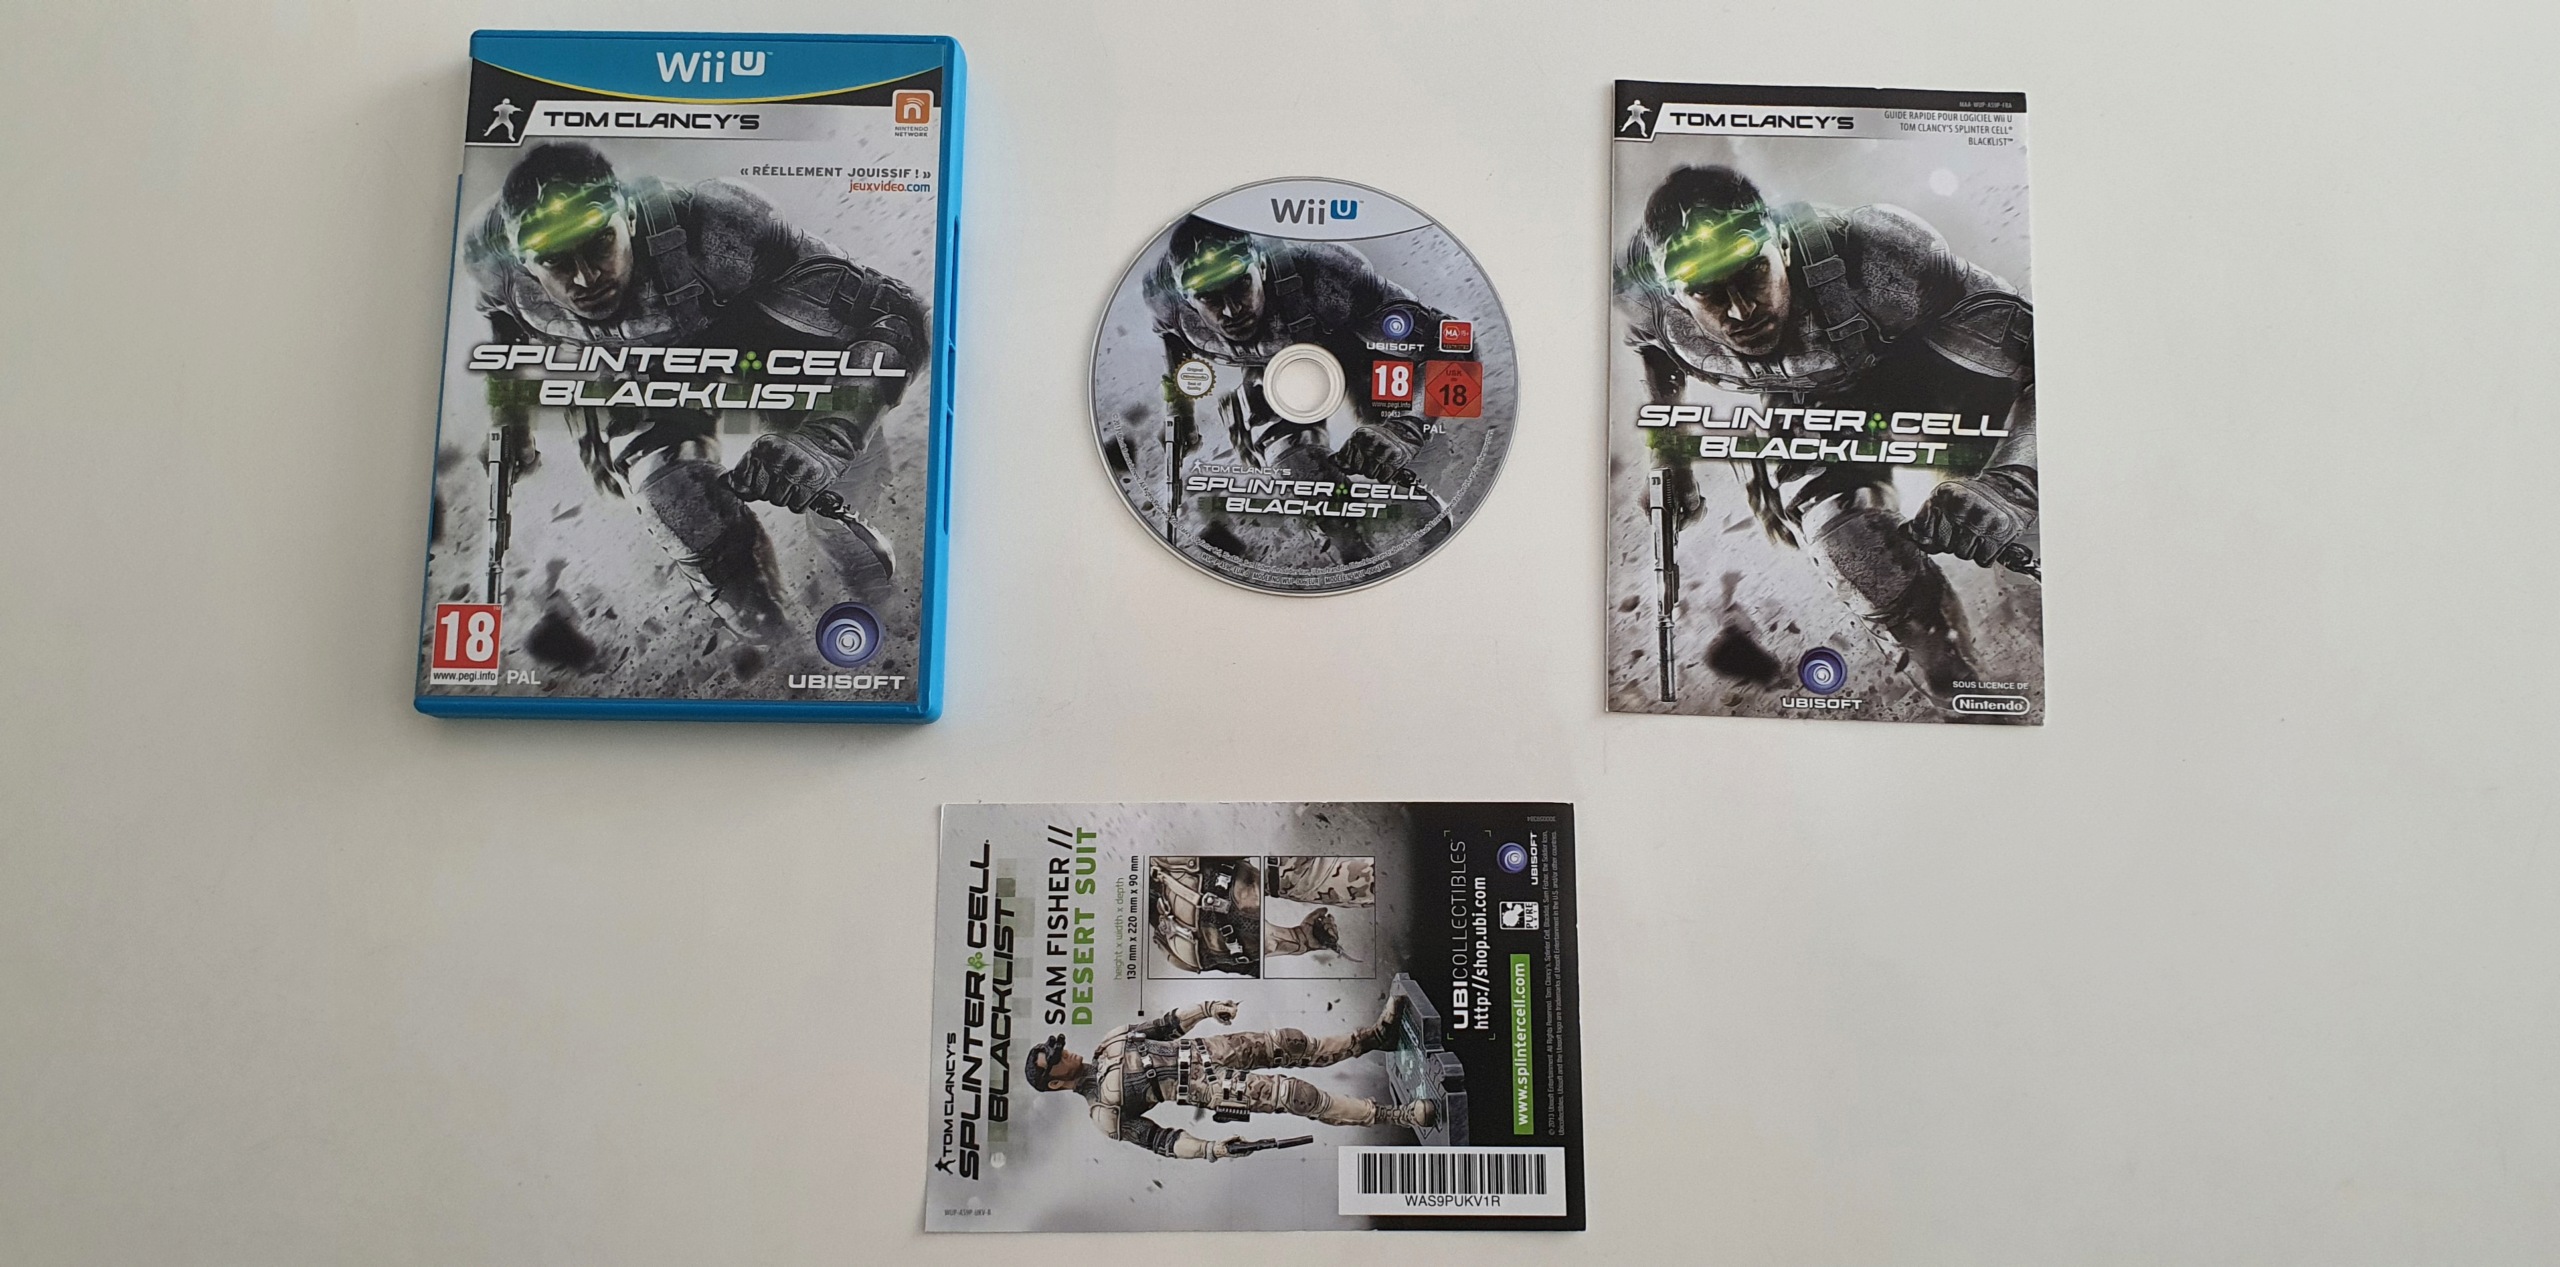 Dadou's Collection - Ajout de 4 jeux Wii U - Page 6 Tom_cl10